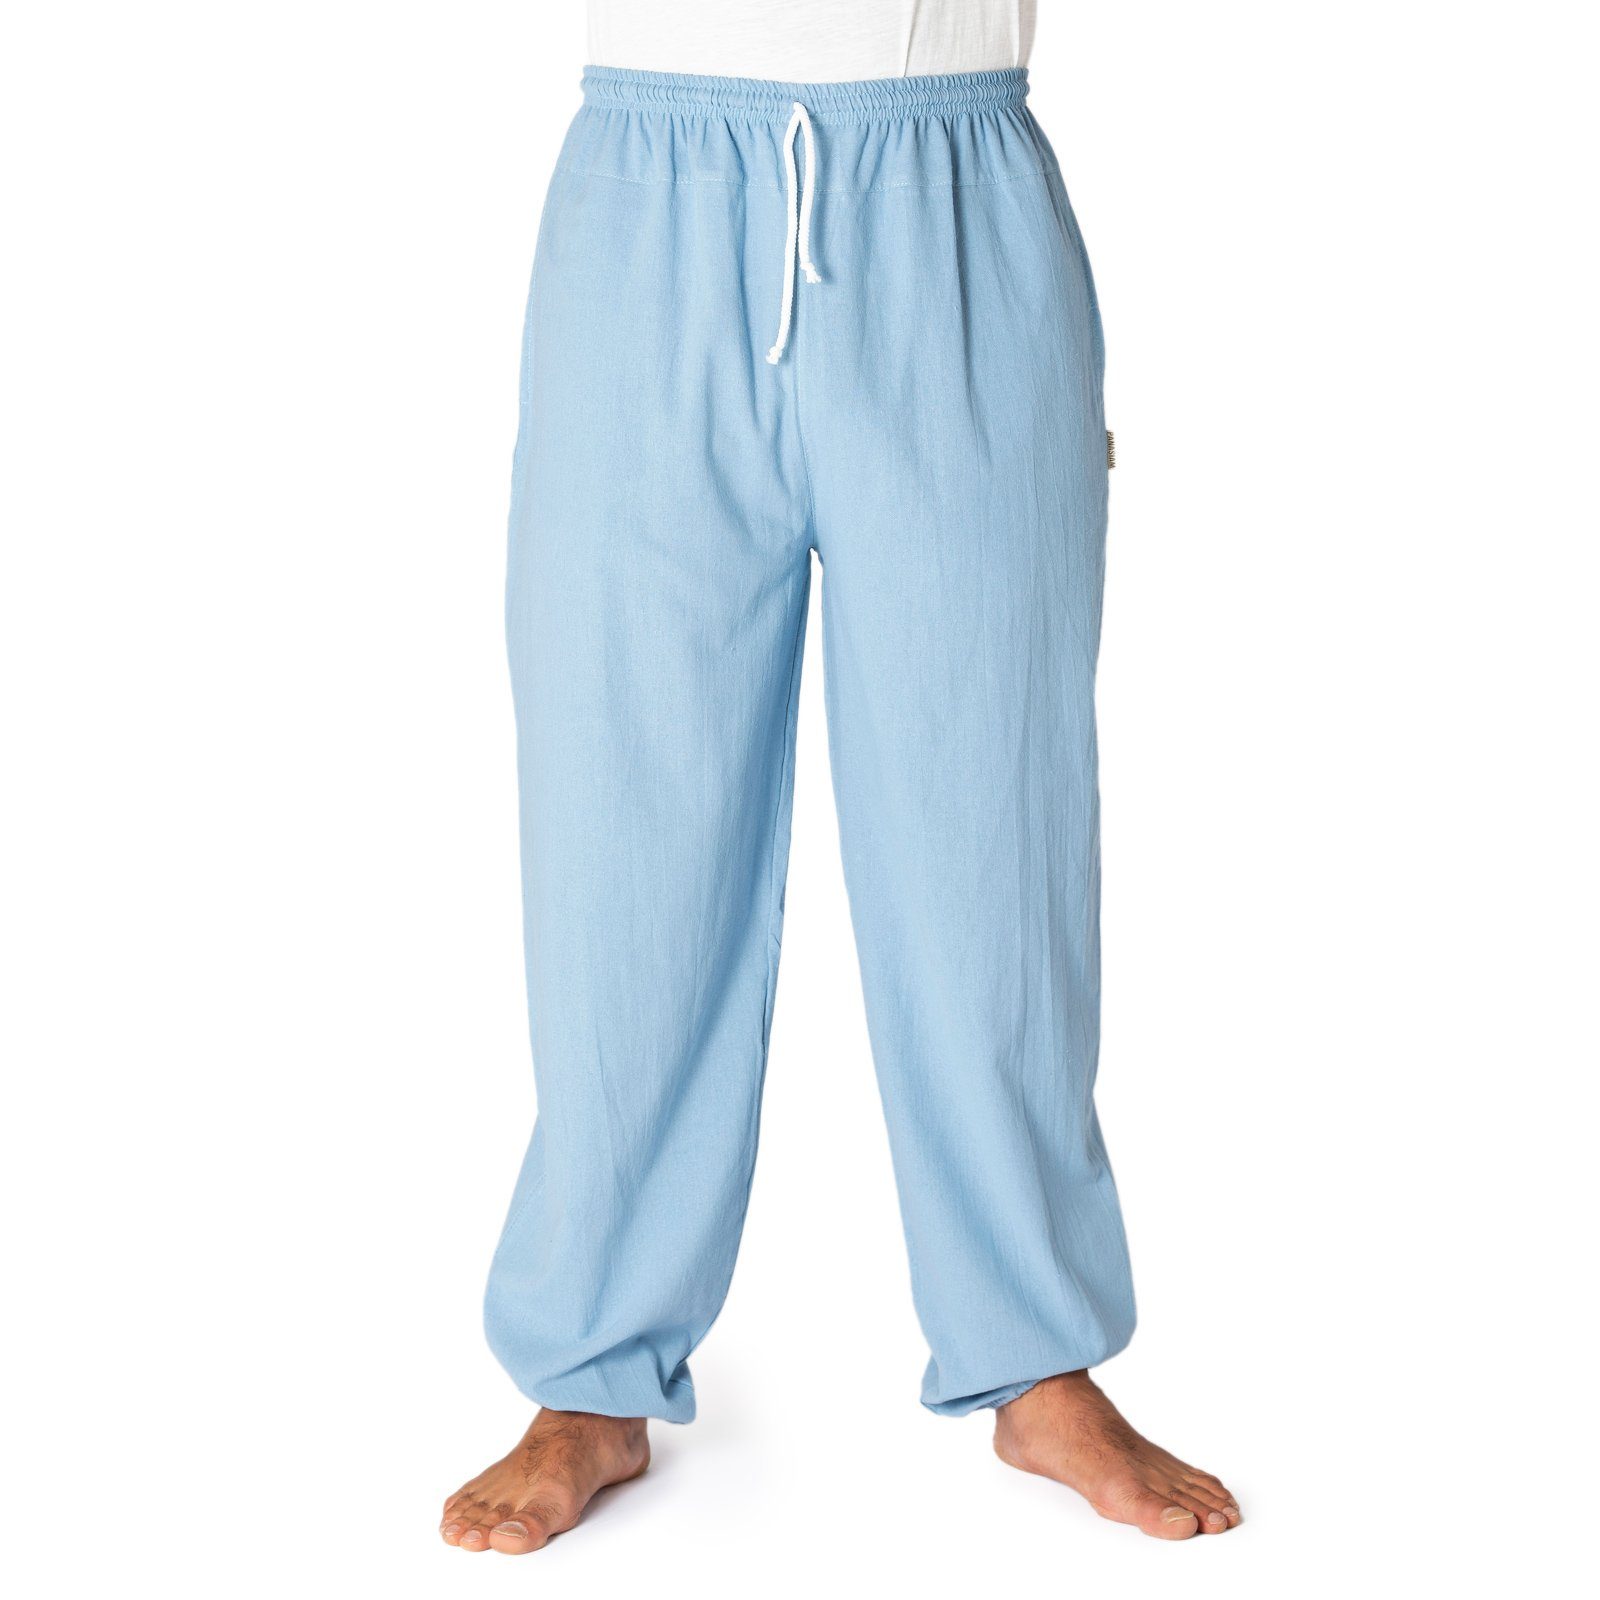 PANASIAM Wellnesshose E-Pants leichte Unisex Bundhose aus weicher Baumwolle für Damen und Herren Freizeithose mit Tunnelzug Relaxhose bequeme Sommerhose hellblau